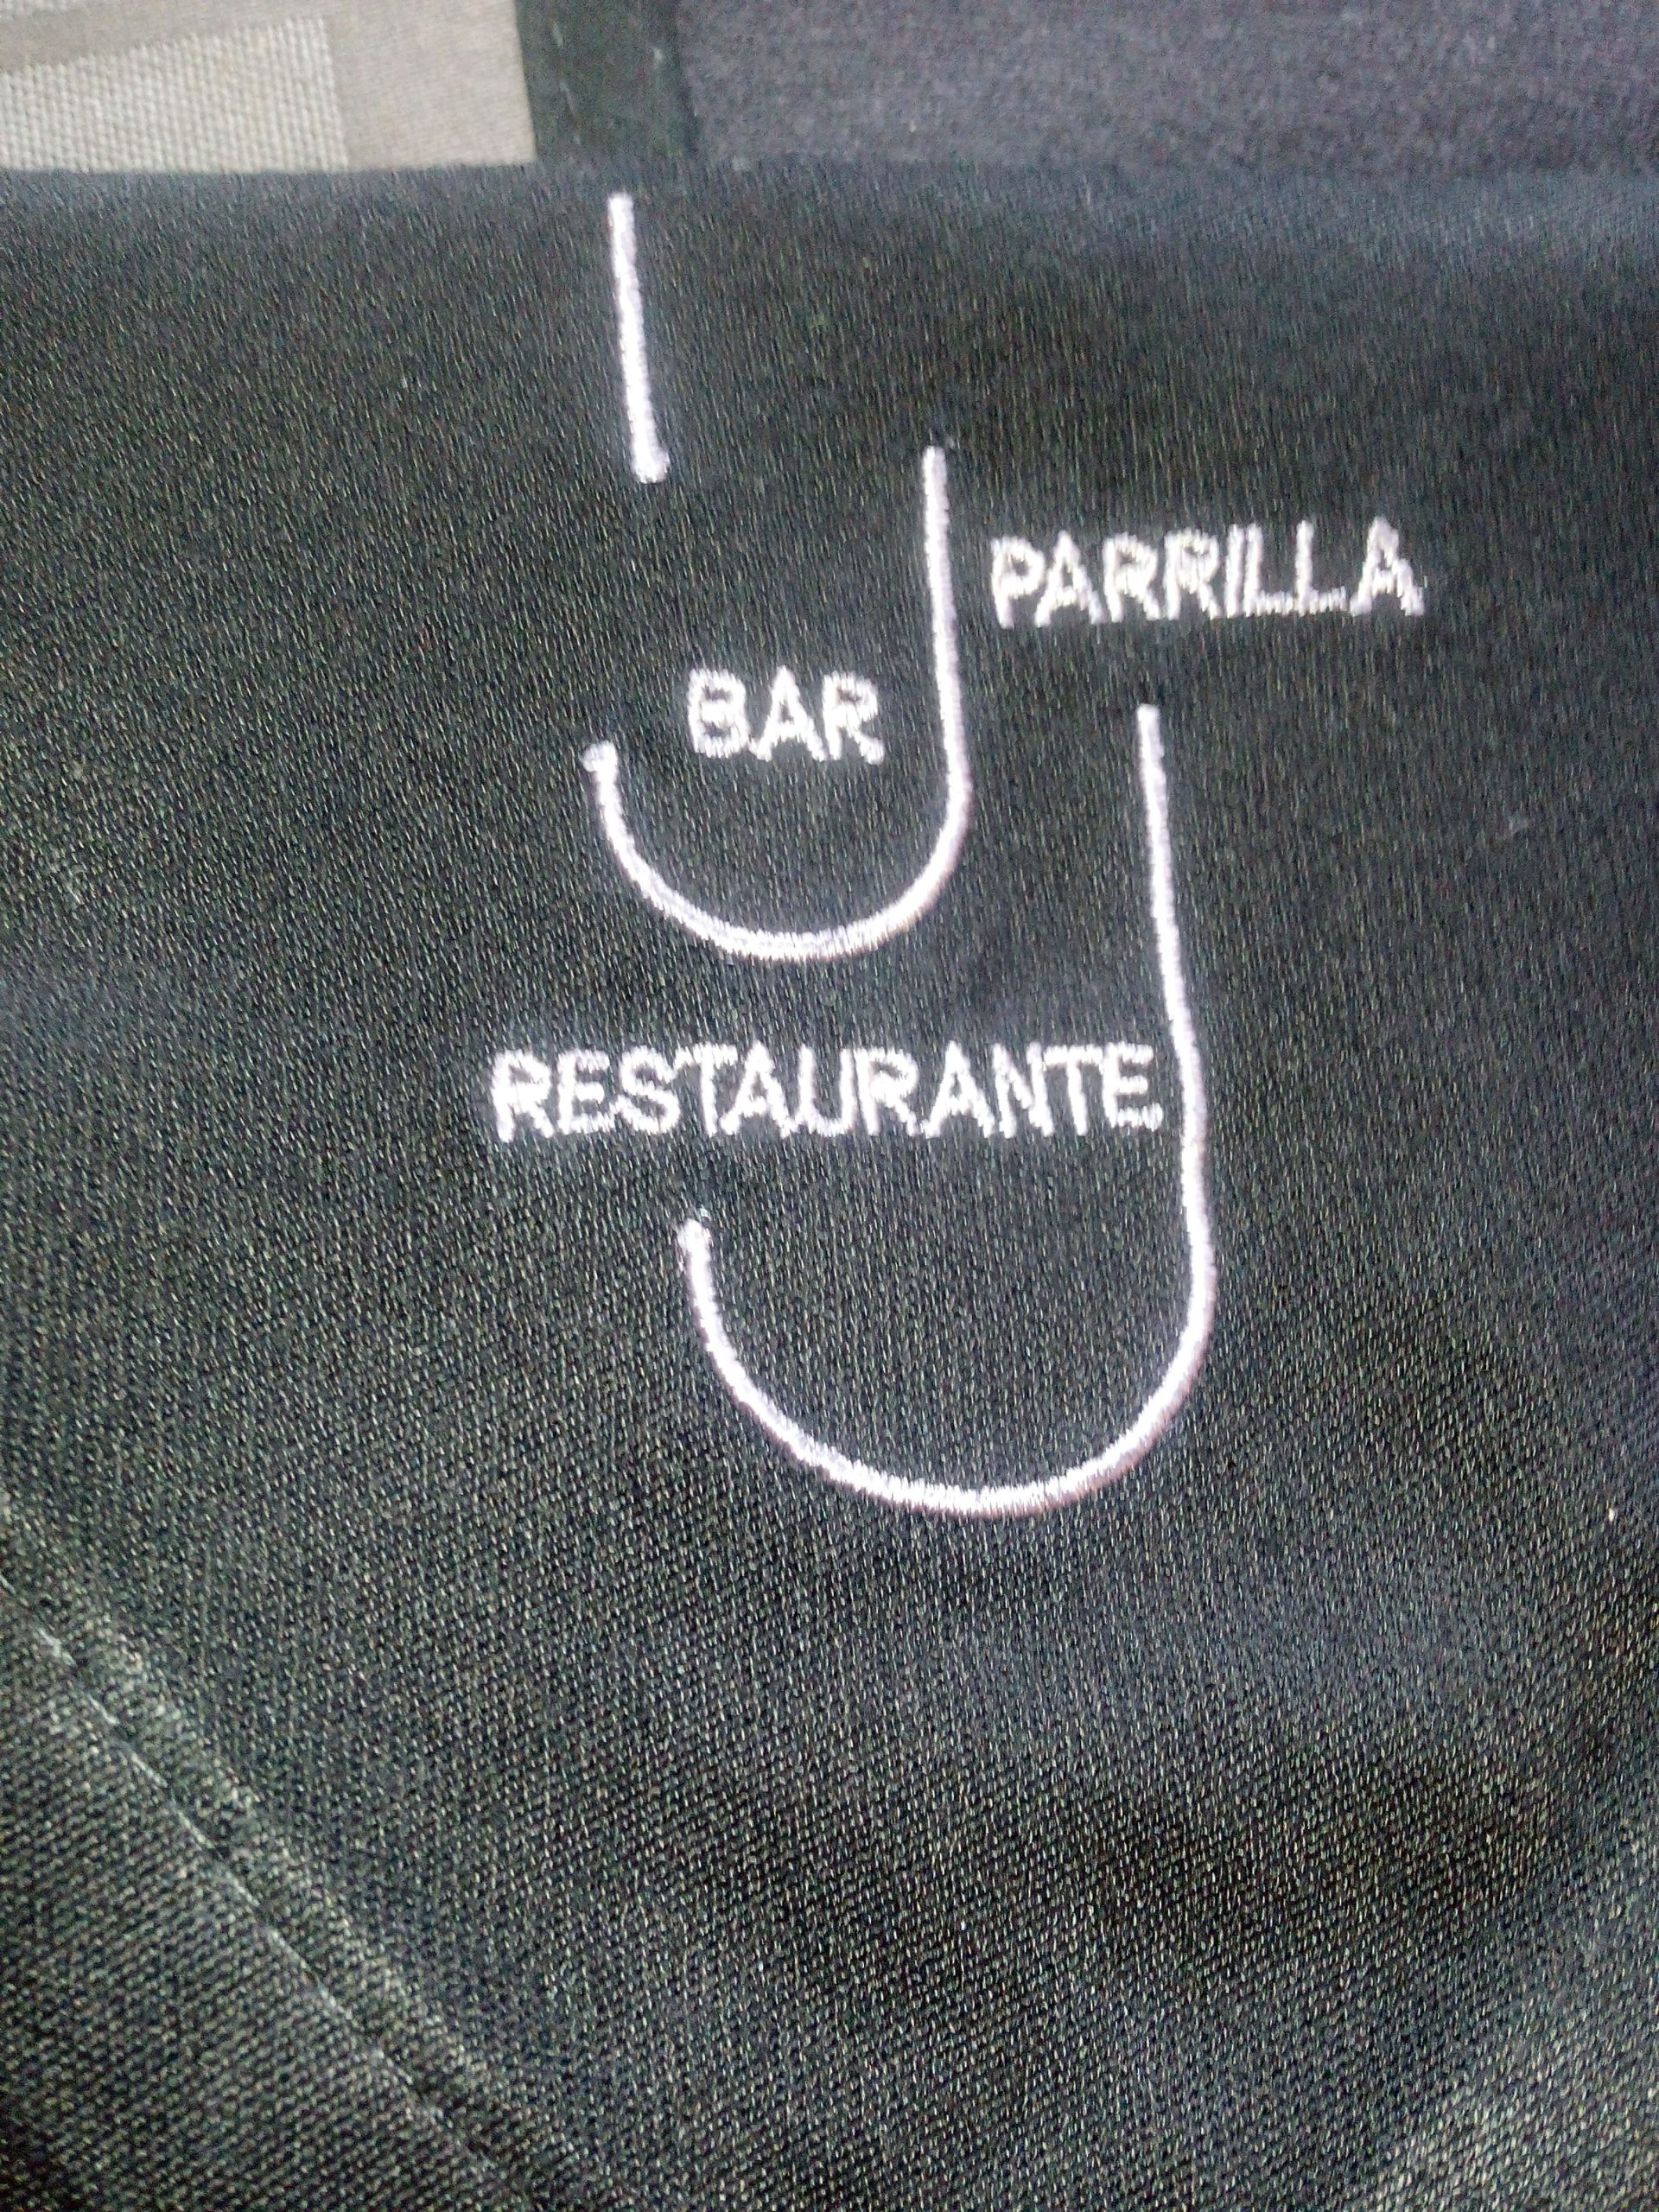 Restaurante Parrilla JJ de LLanes